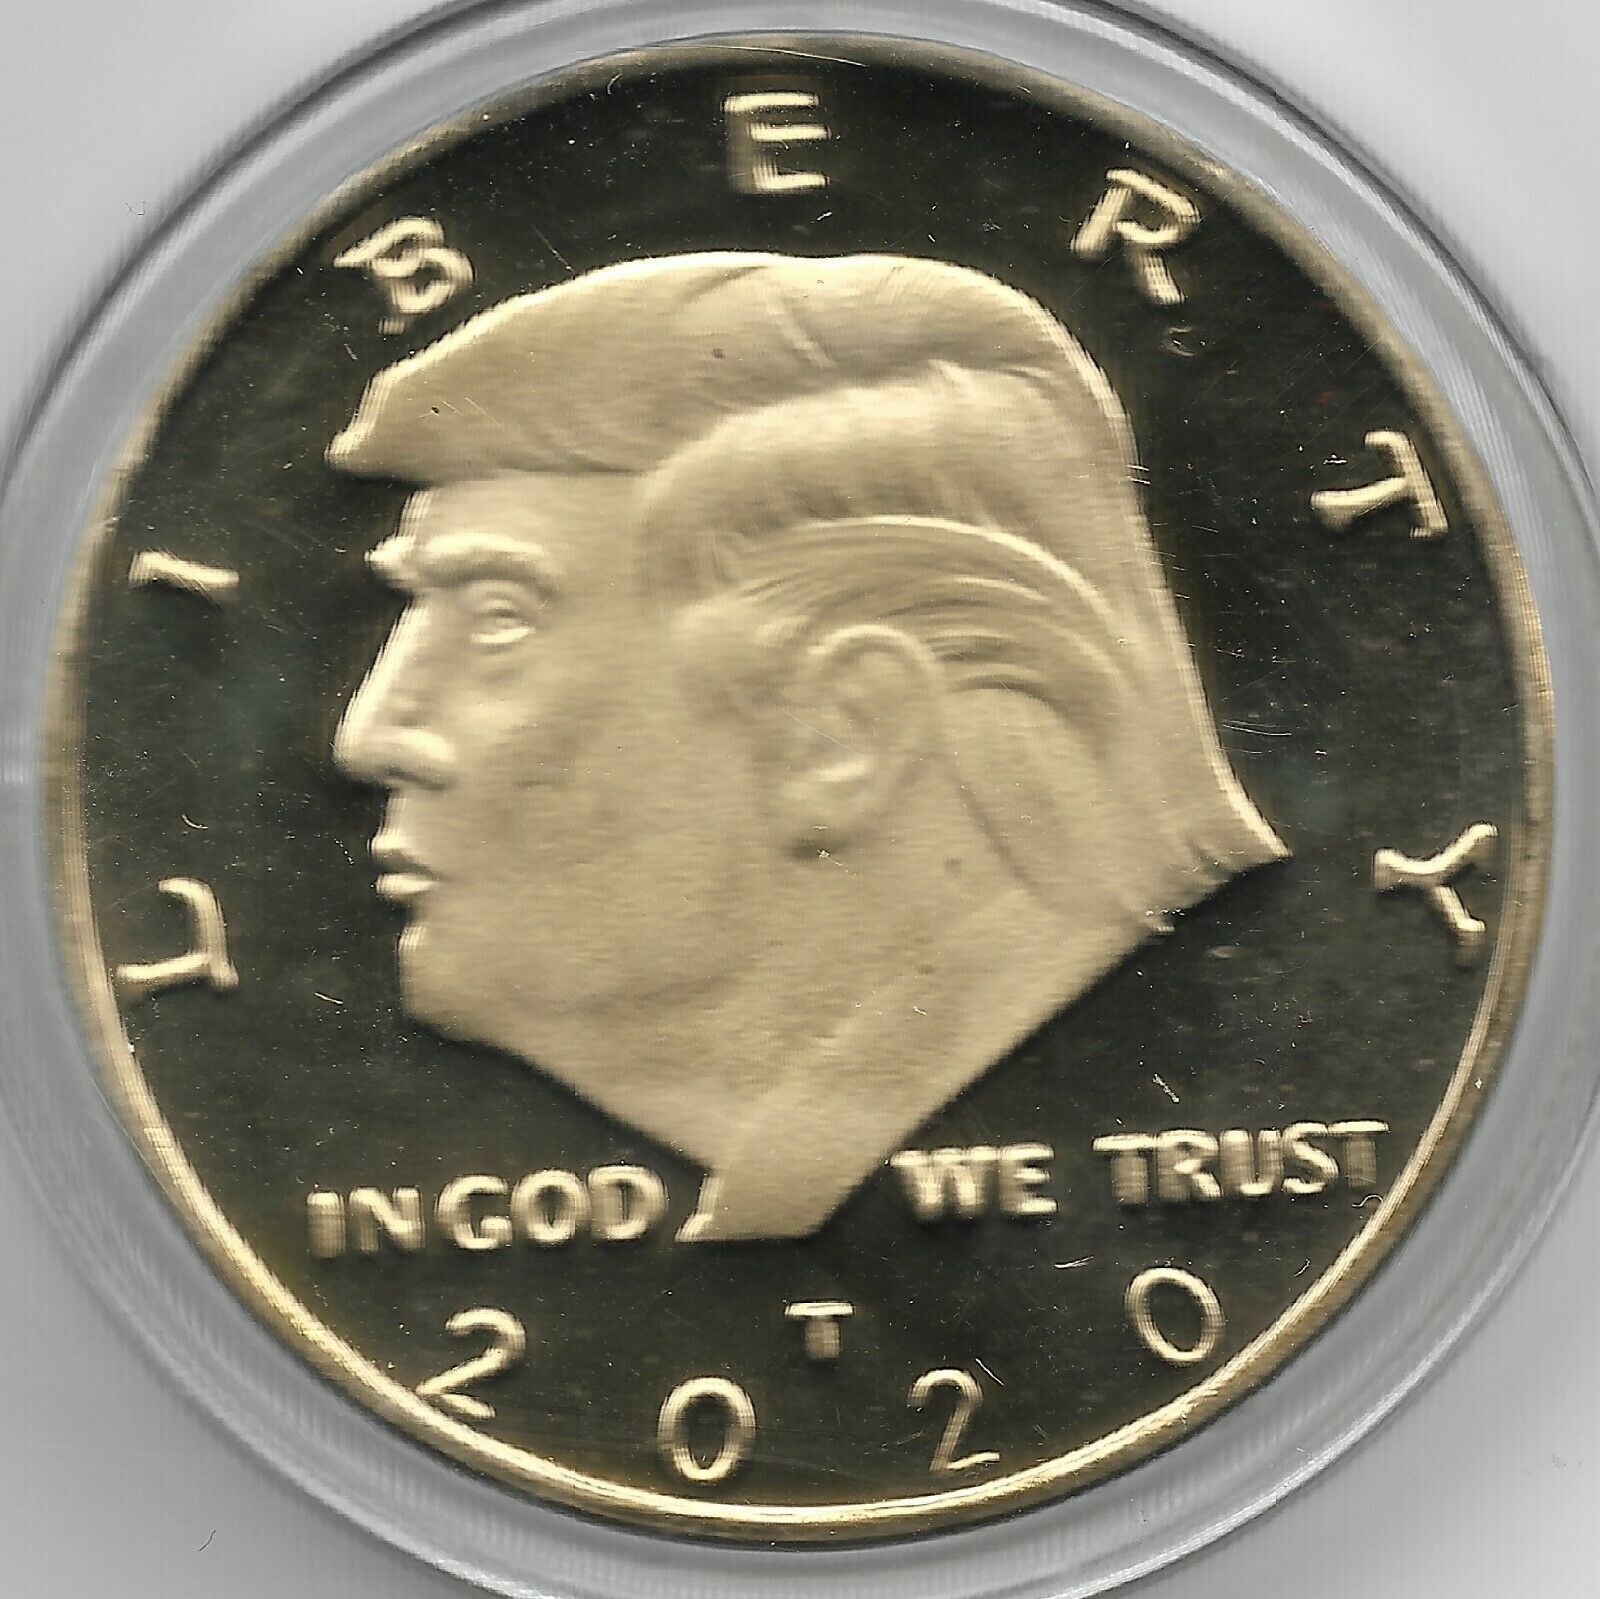 🔥 Rare 2020 Us Donald Trump President Gold Eagle Collectible Collection Coin 🔥